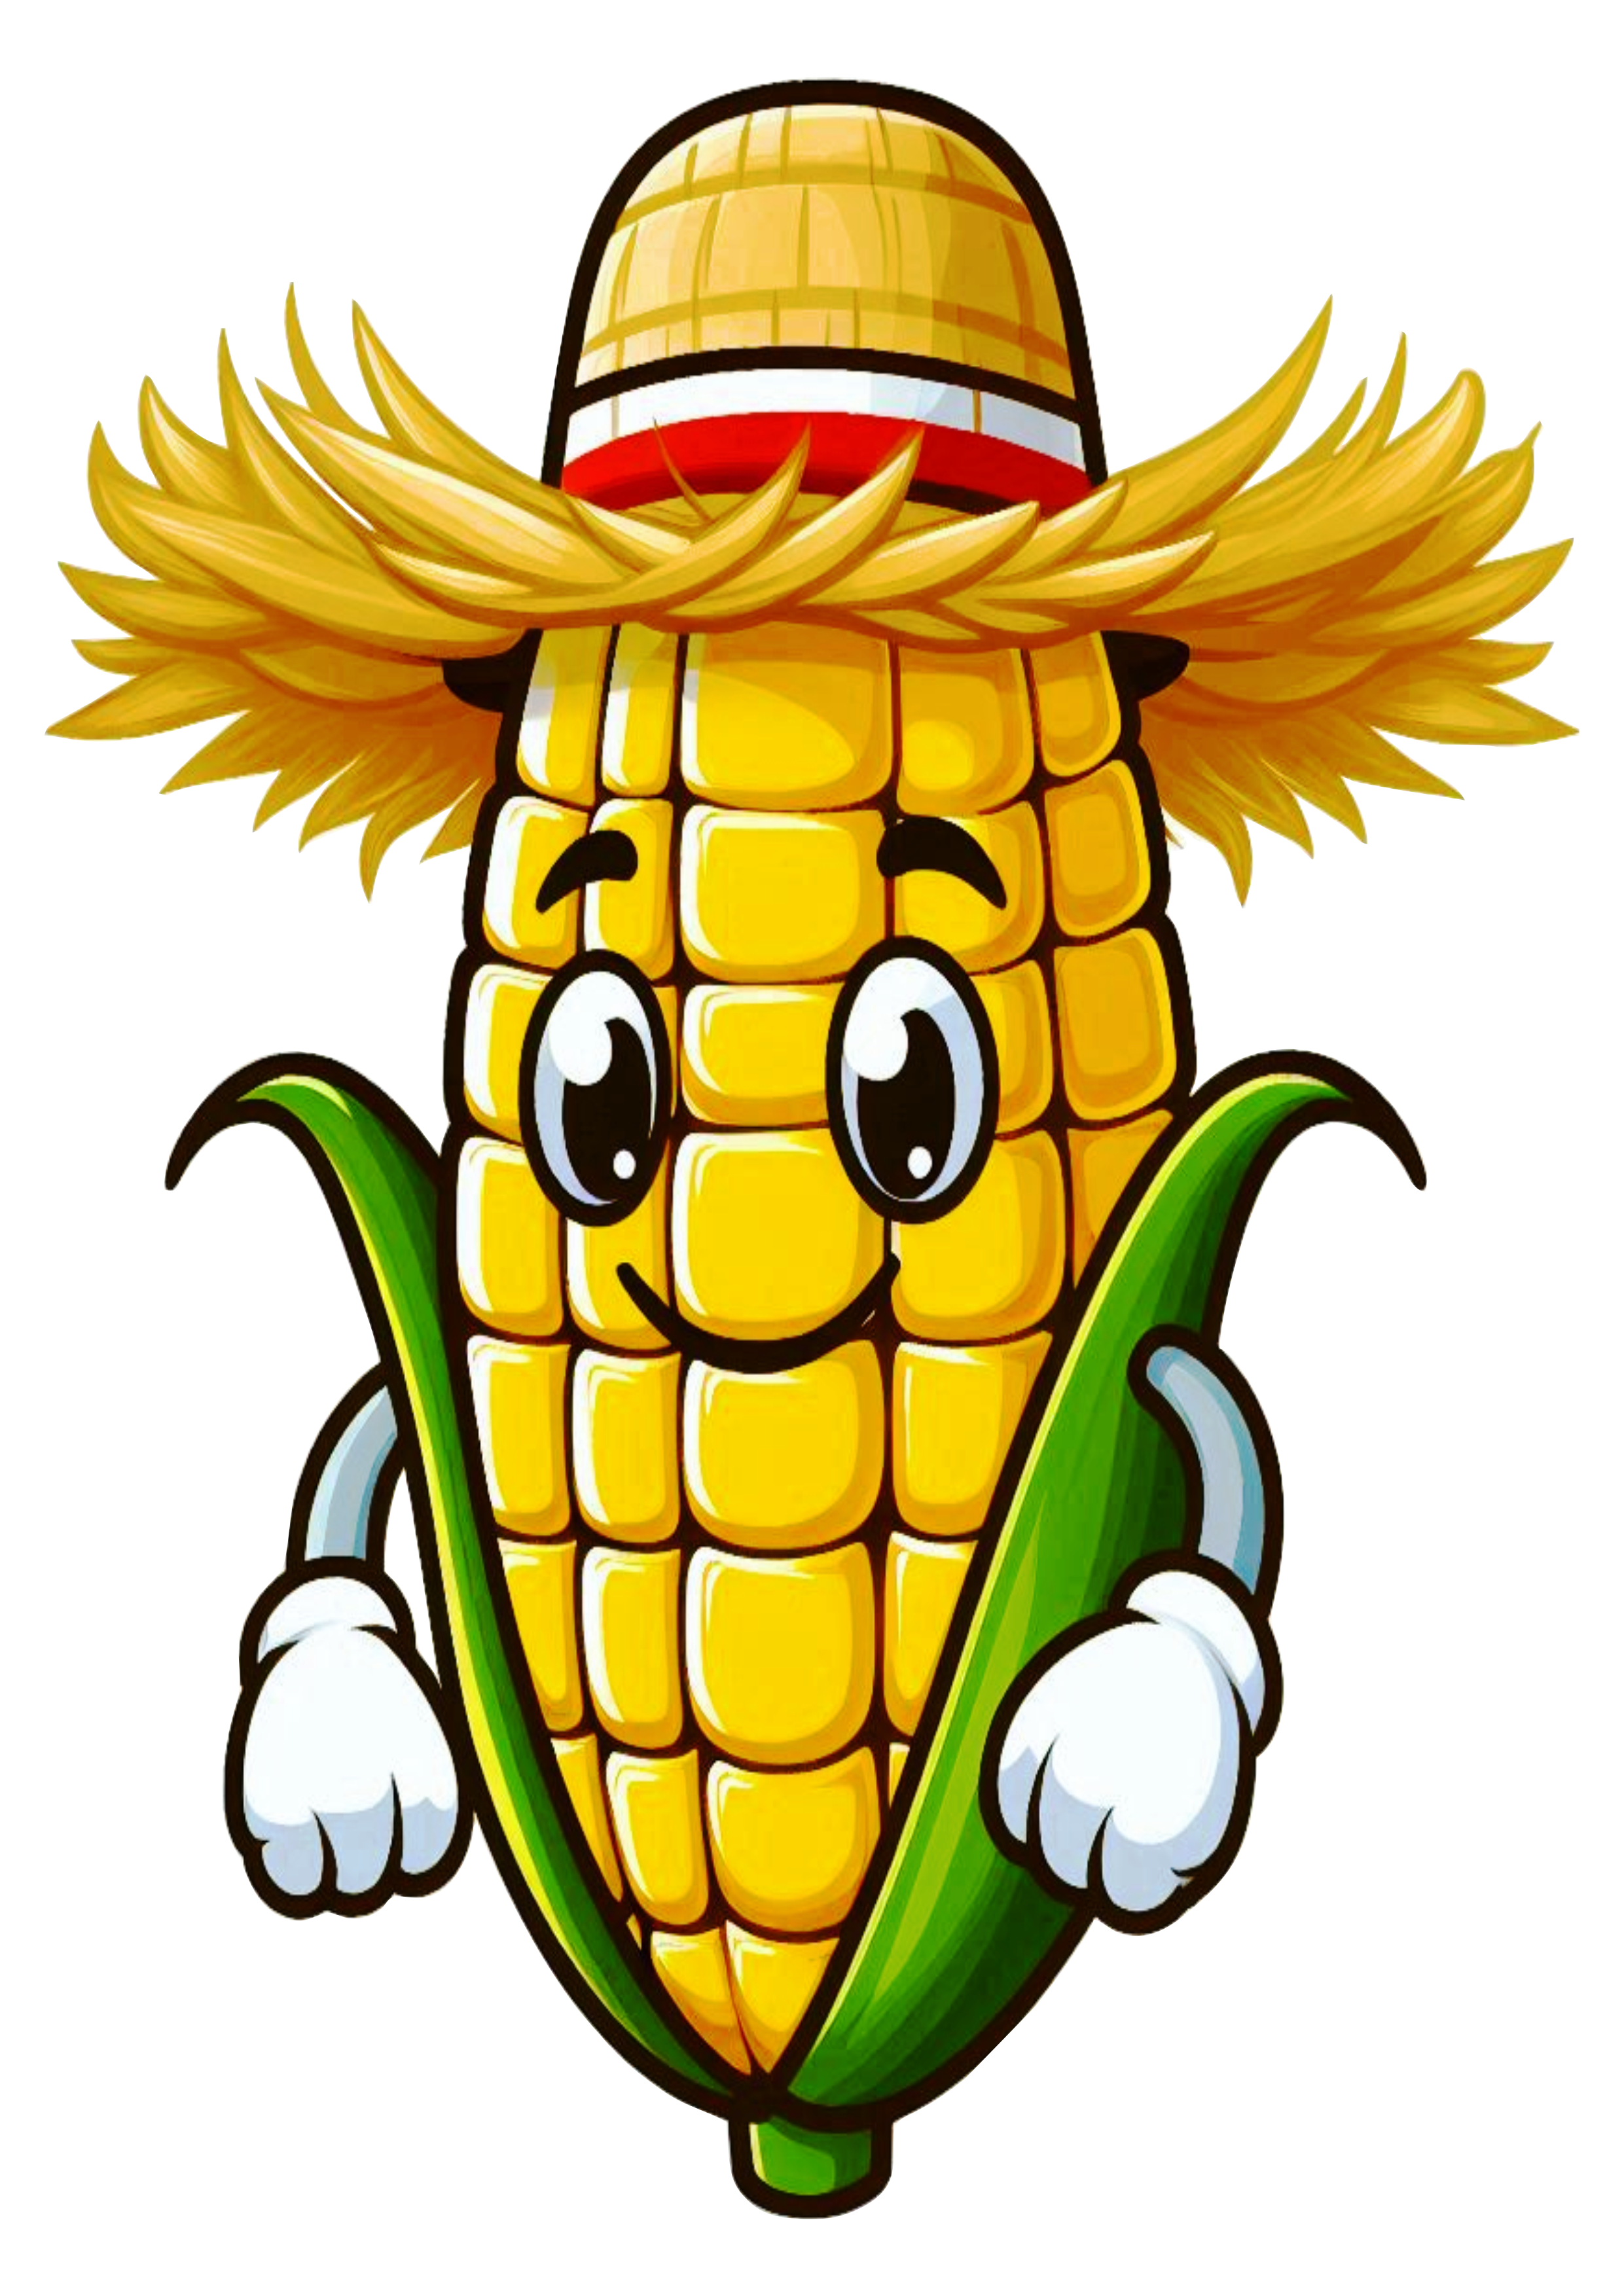 Imagens de festa junina png espiga de milho com chapéu de palha desenho simples cartoon free design fundo transparente